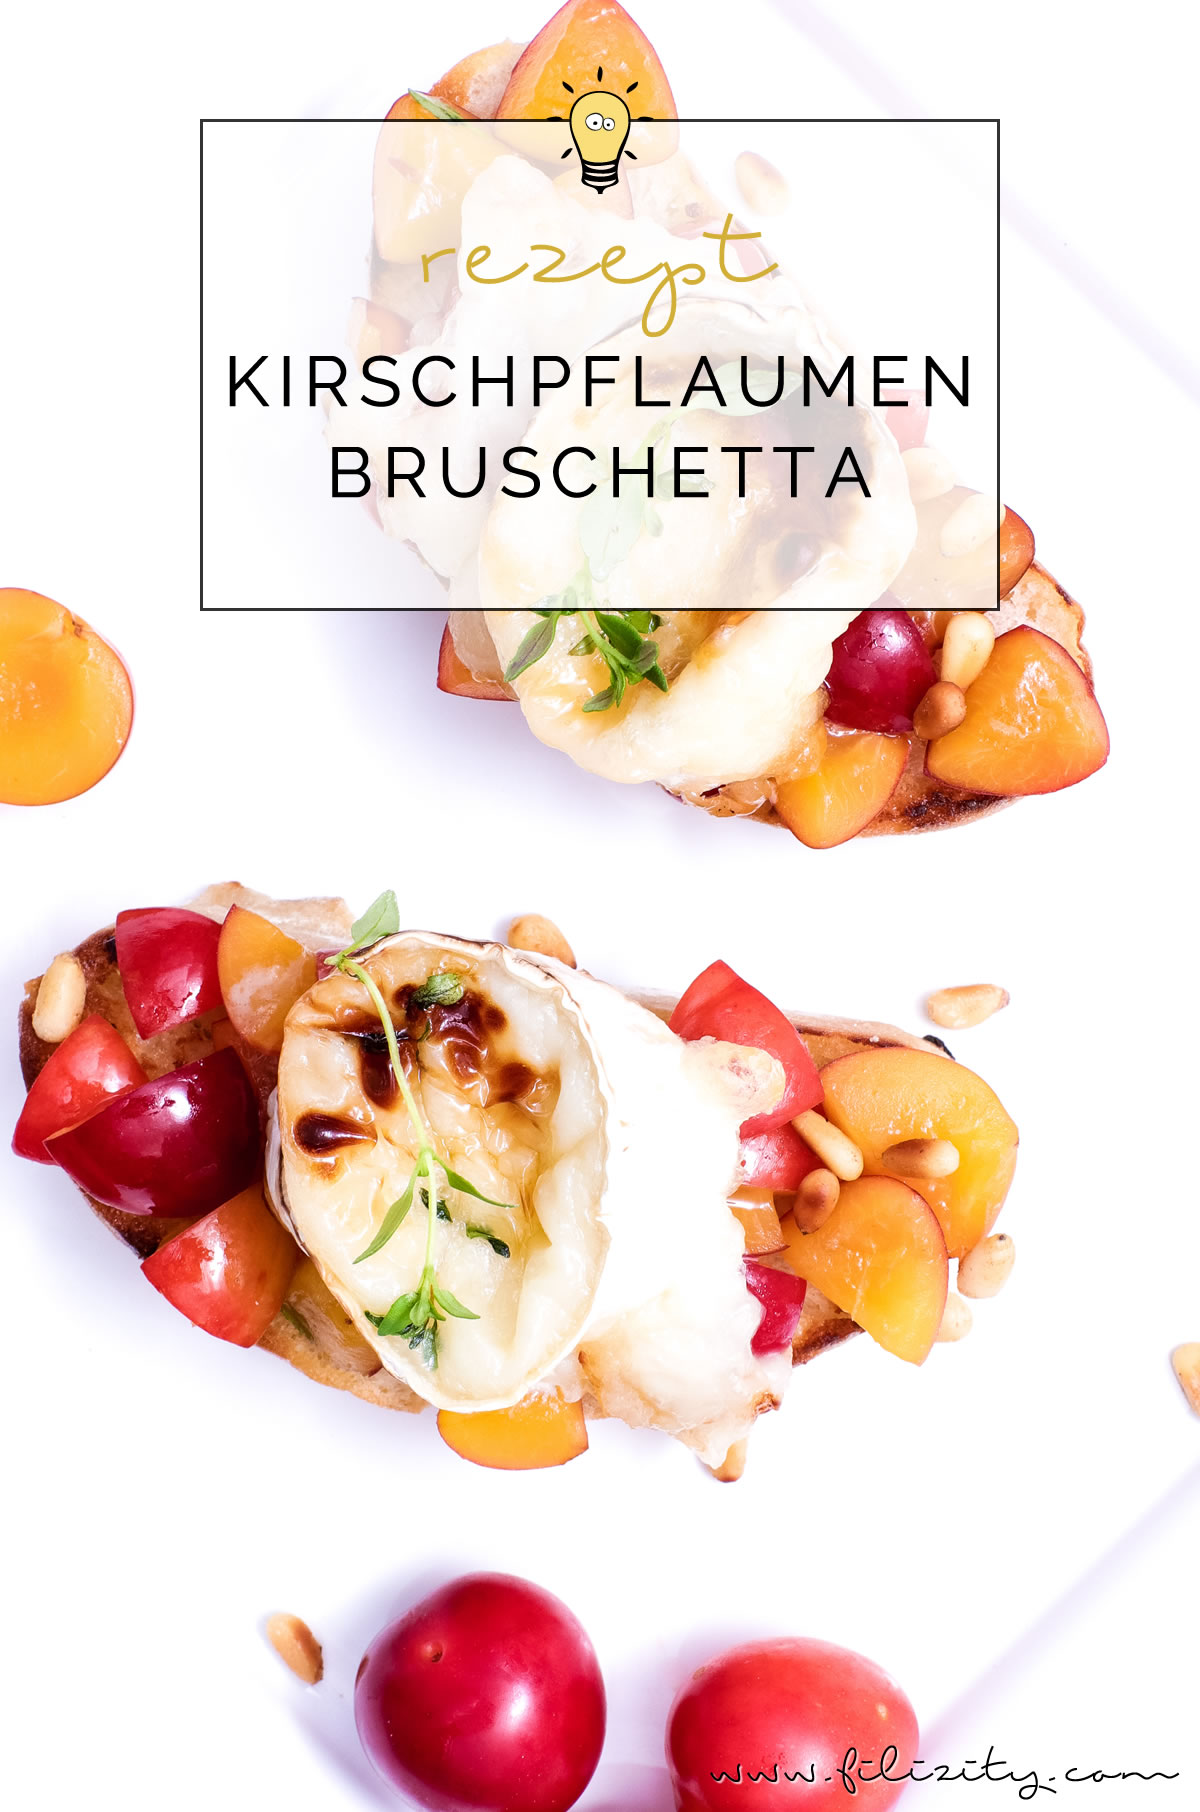 Rezept für Mirabellen- oder Kirschpflaumen-Bruschetta mit gratiniertem Ziegenkäse, Thymian und Pinienkernen | Filizity.com | Food-Blog aus dem Rheinland #sommer #herbst #brot